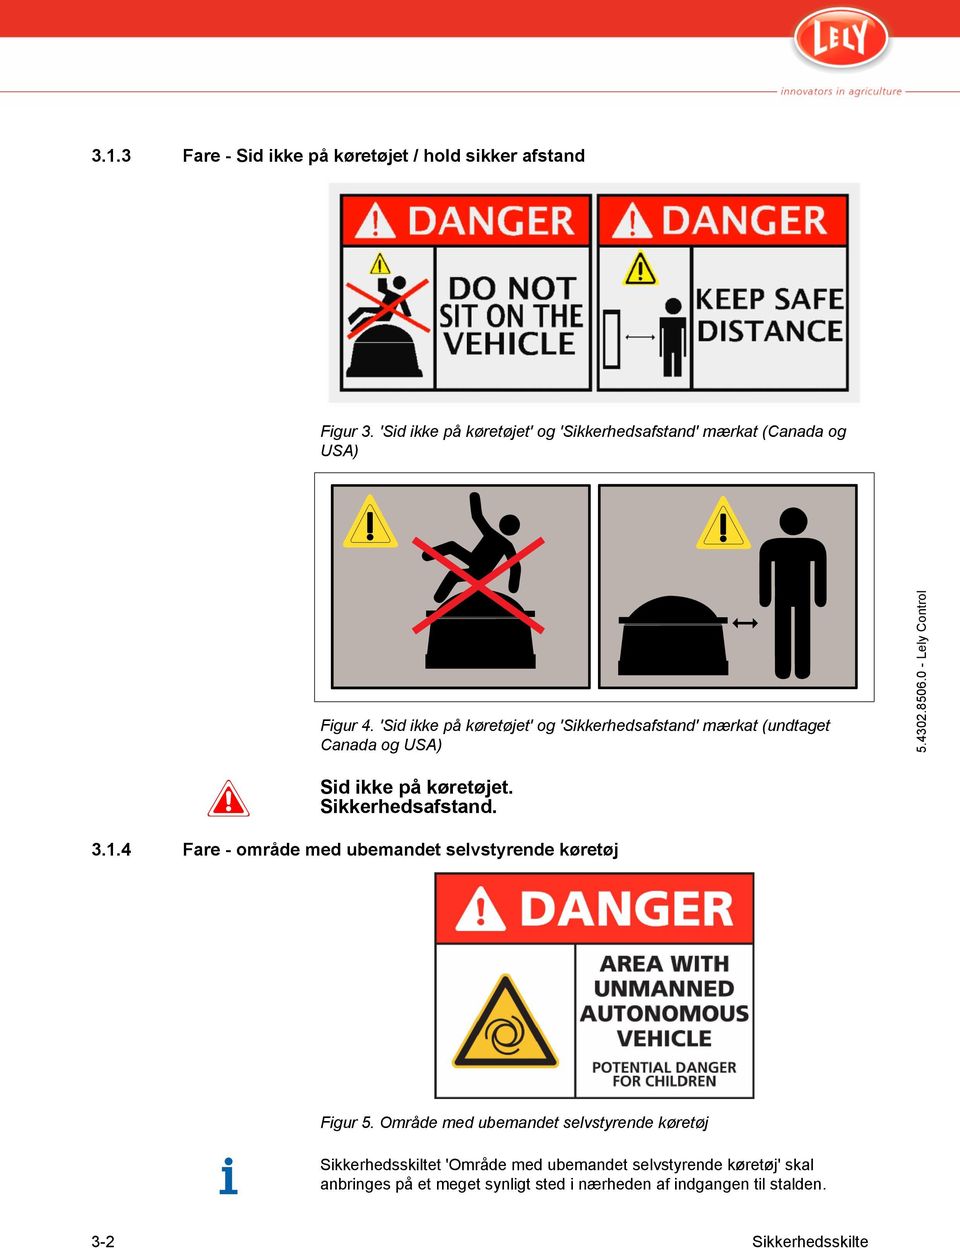 'Sid ikke på køretøjet' og 'Sikkerhedsafstand' mærkat (undtaget Canada og USA) Sid ikke på køretøjet. Sikkerhedsafstand. 3.1.